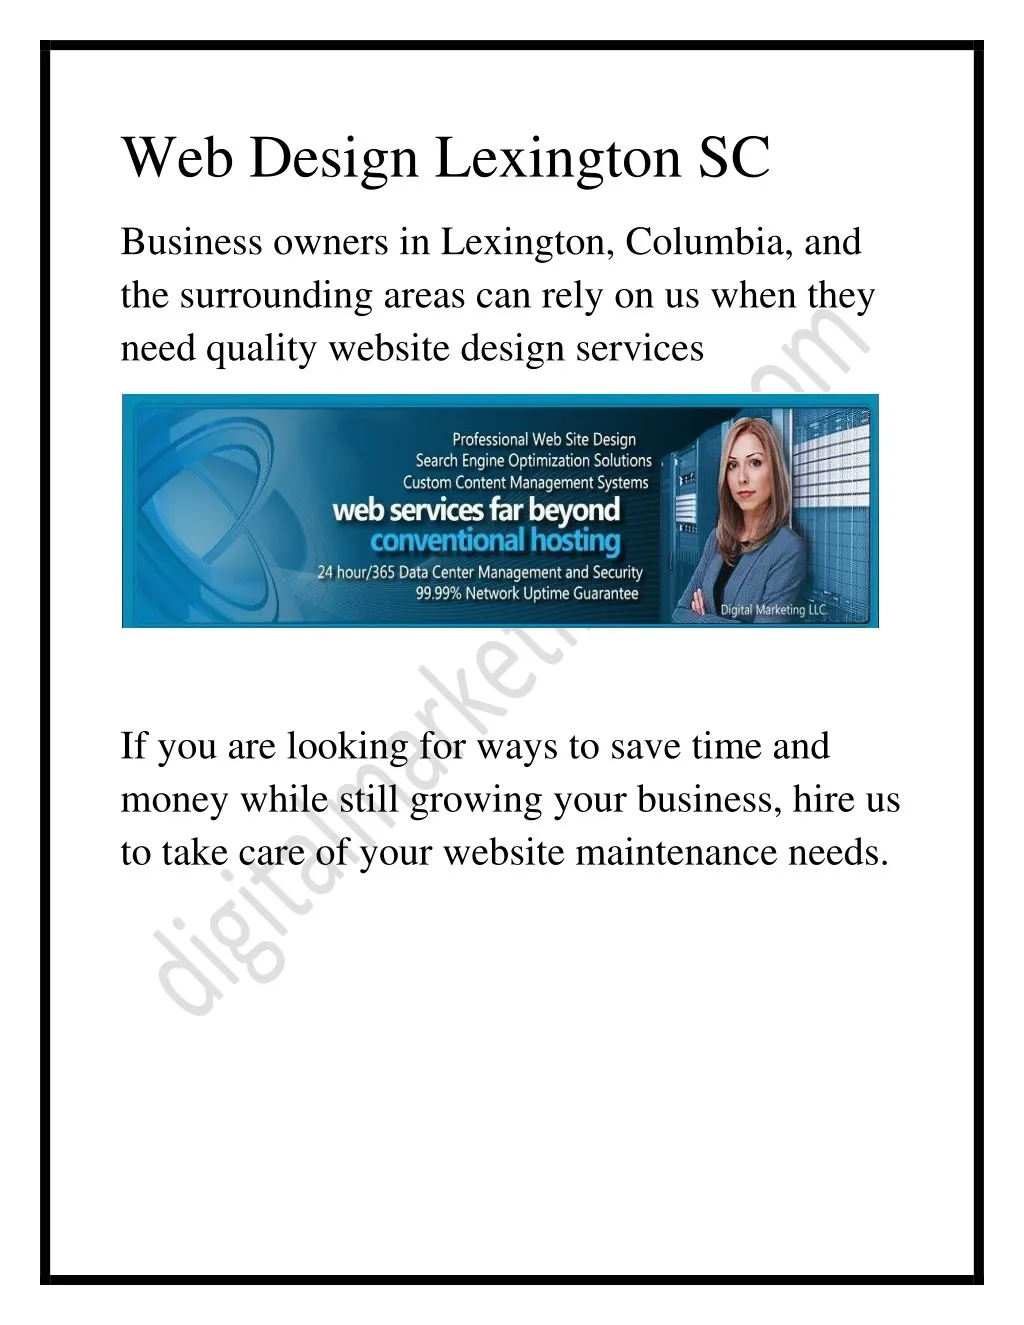 web design lexington sc